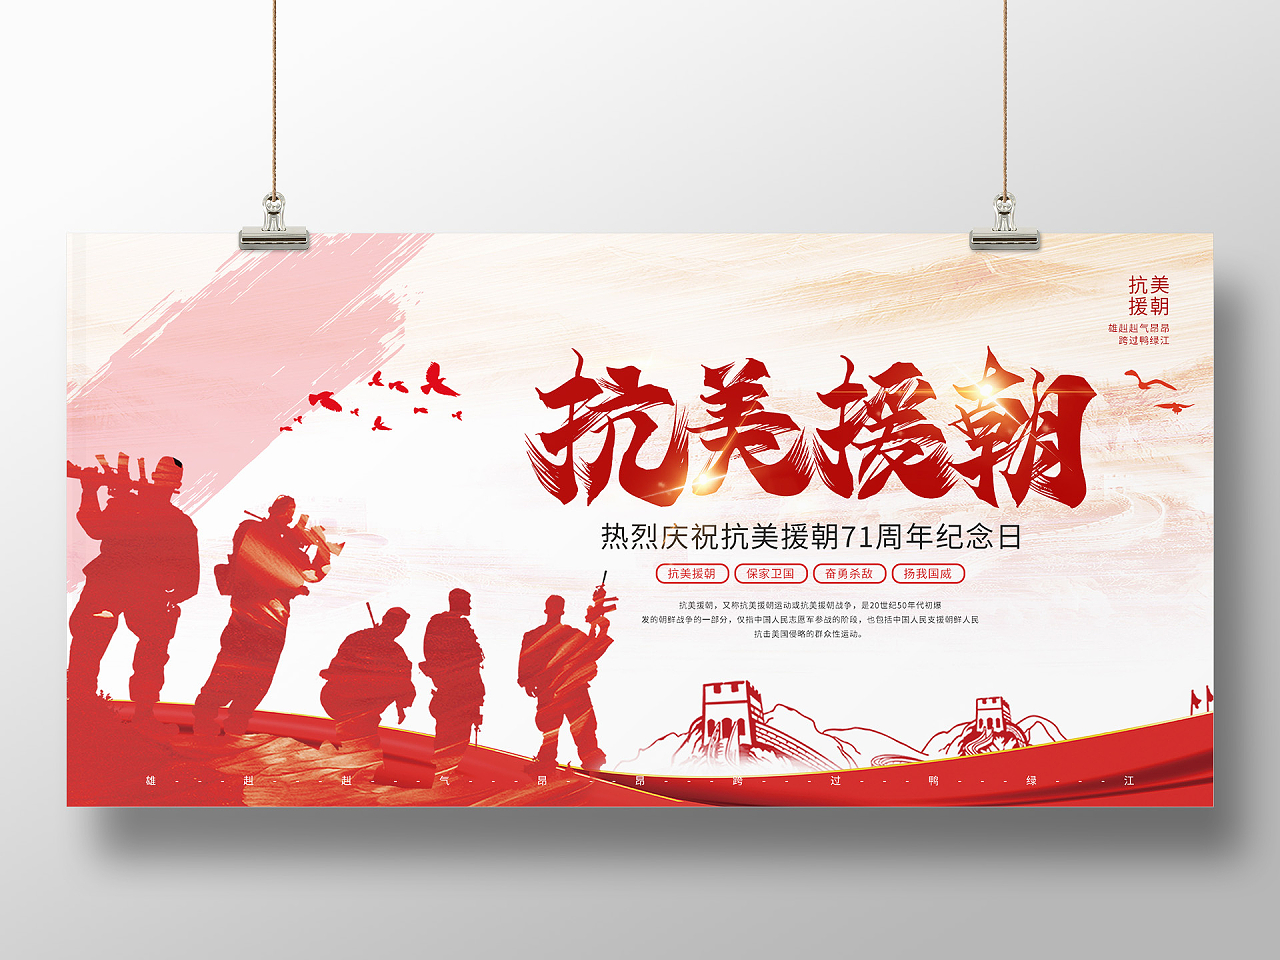 红色大气热烈庆祝抗美援朝71周年纪念日展板海报设计抗美援朝纪念日